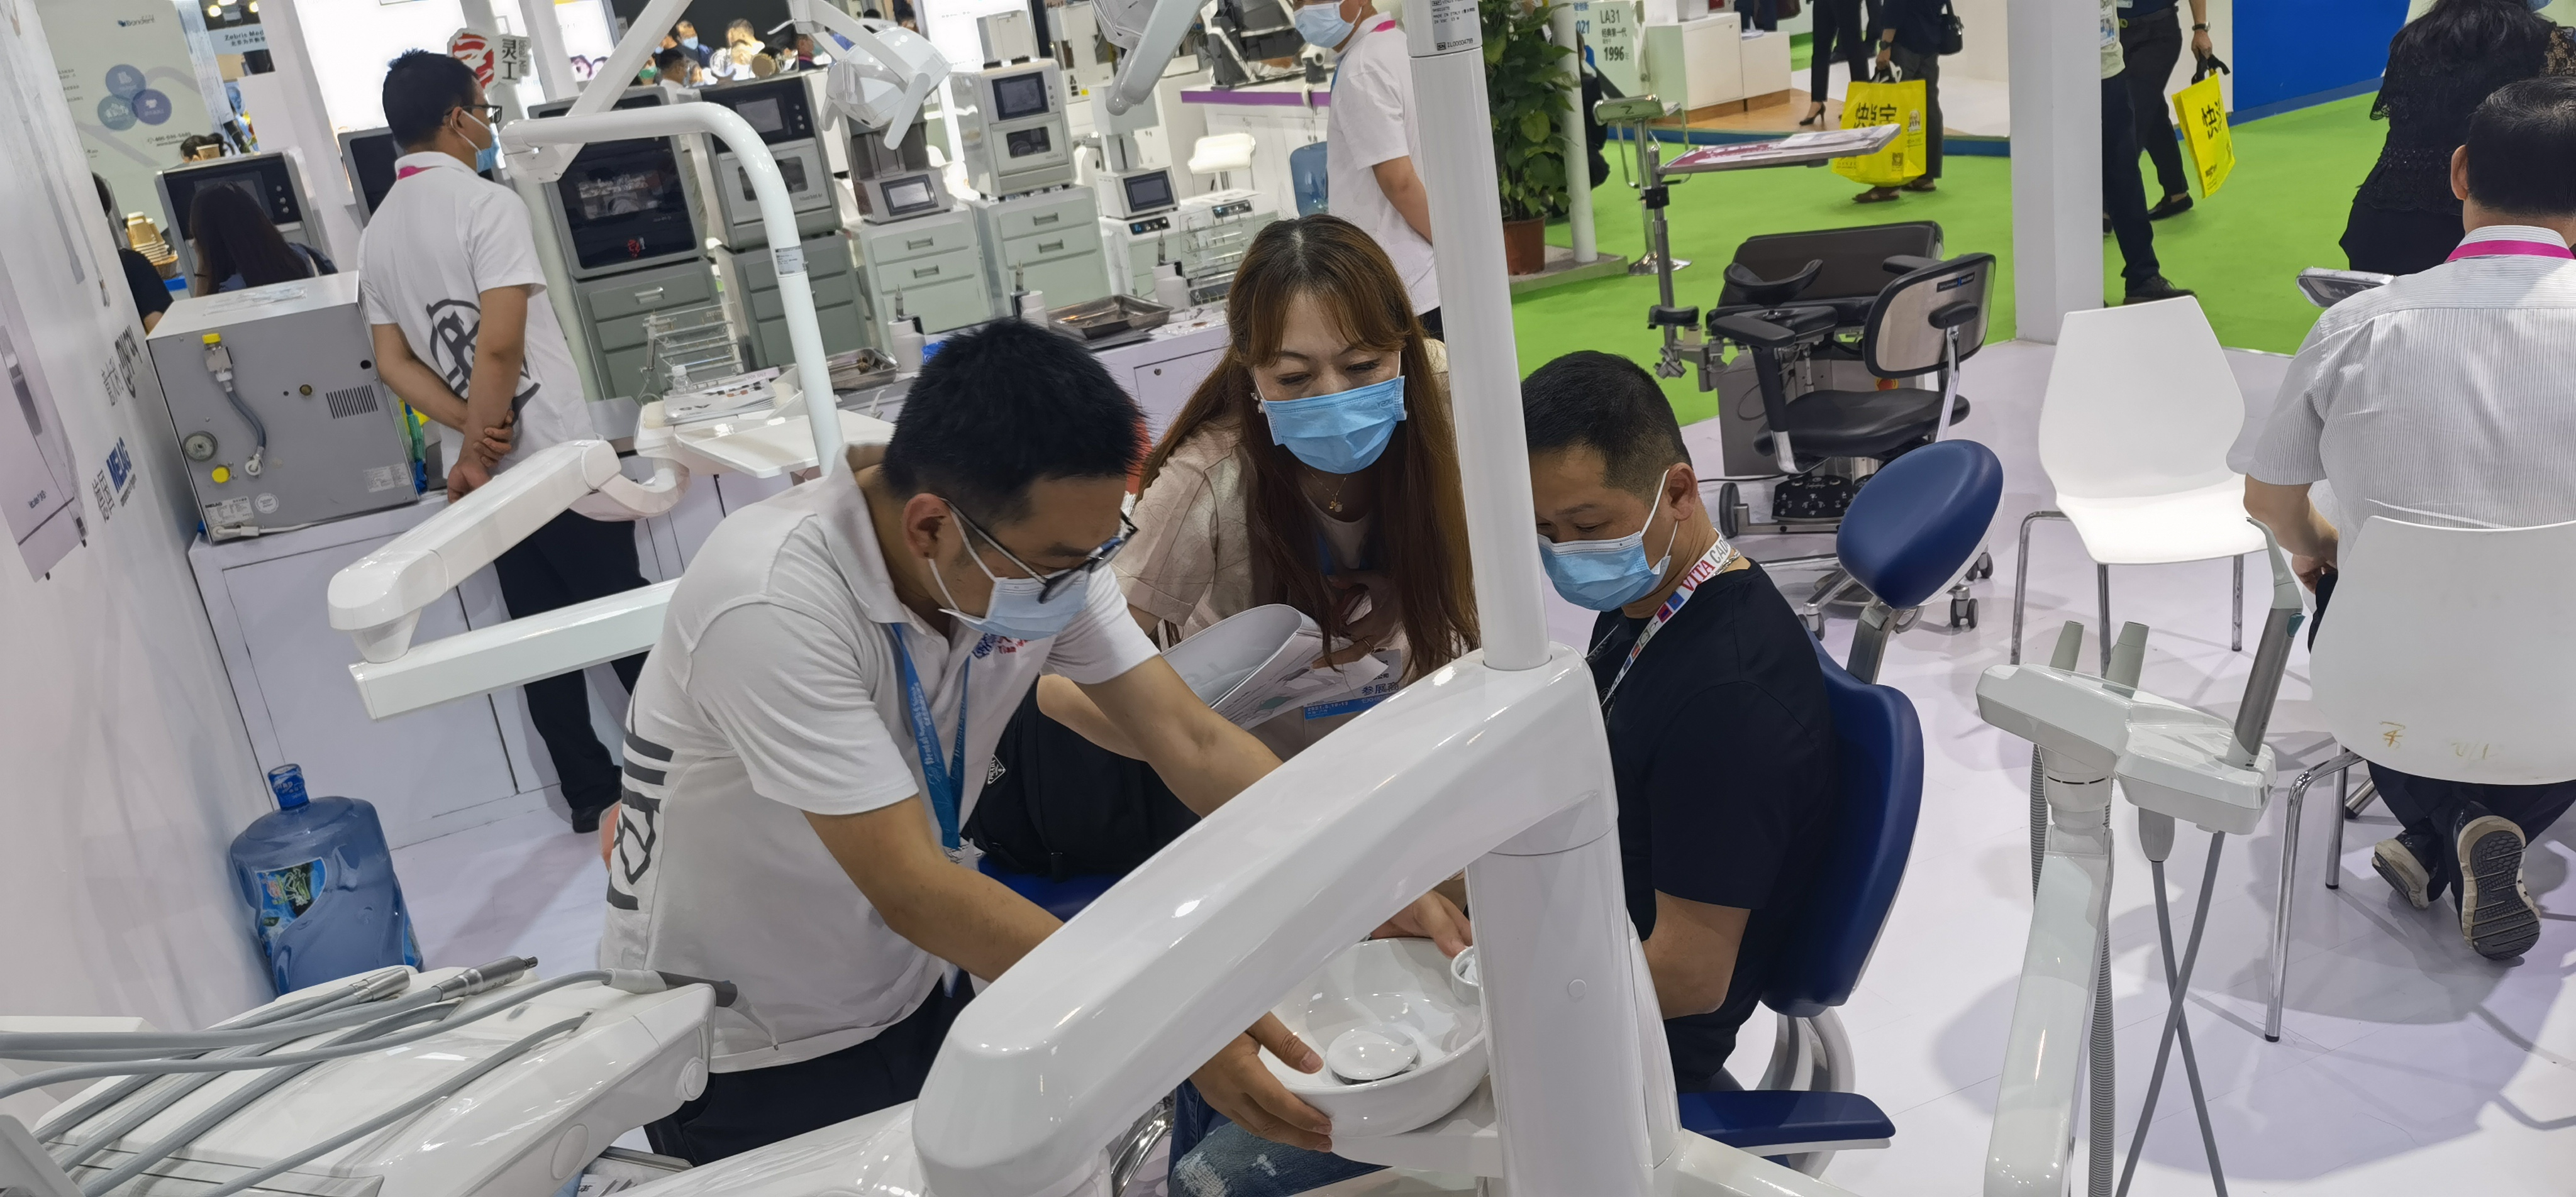 【天鷹醫療】參展 2021年華南國際口腔醫療器材展覽會